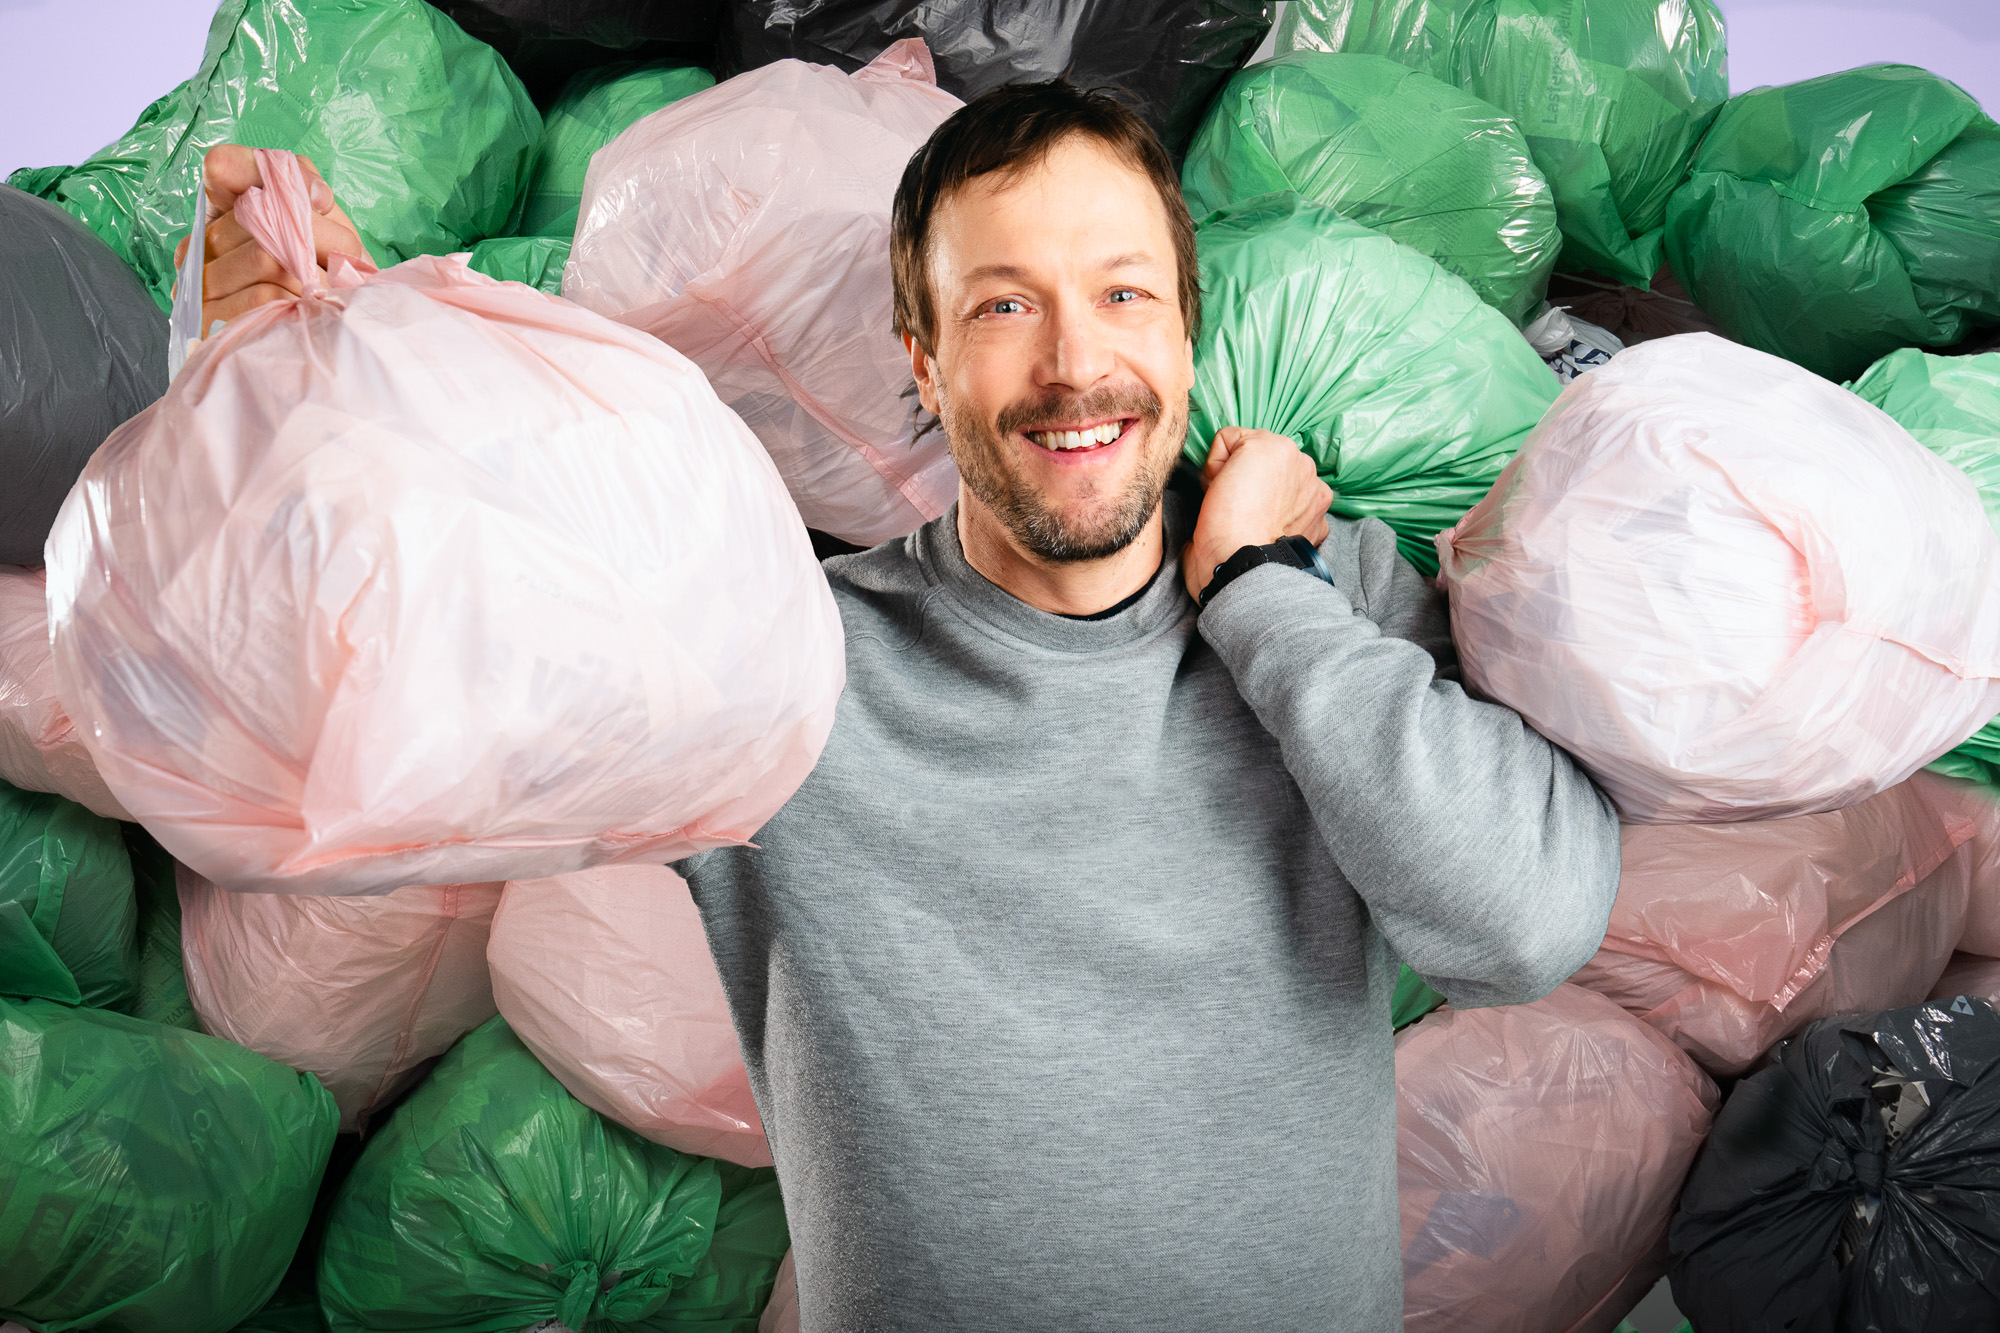 Miljoona roskapussia-siivouskampanja käynnistyy 15.4. image